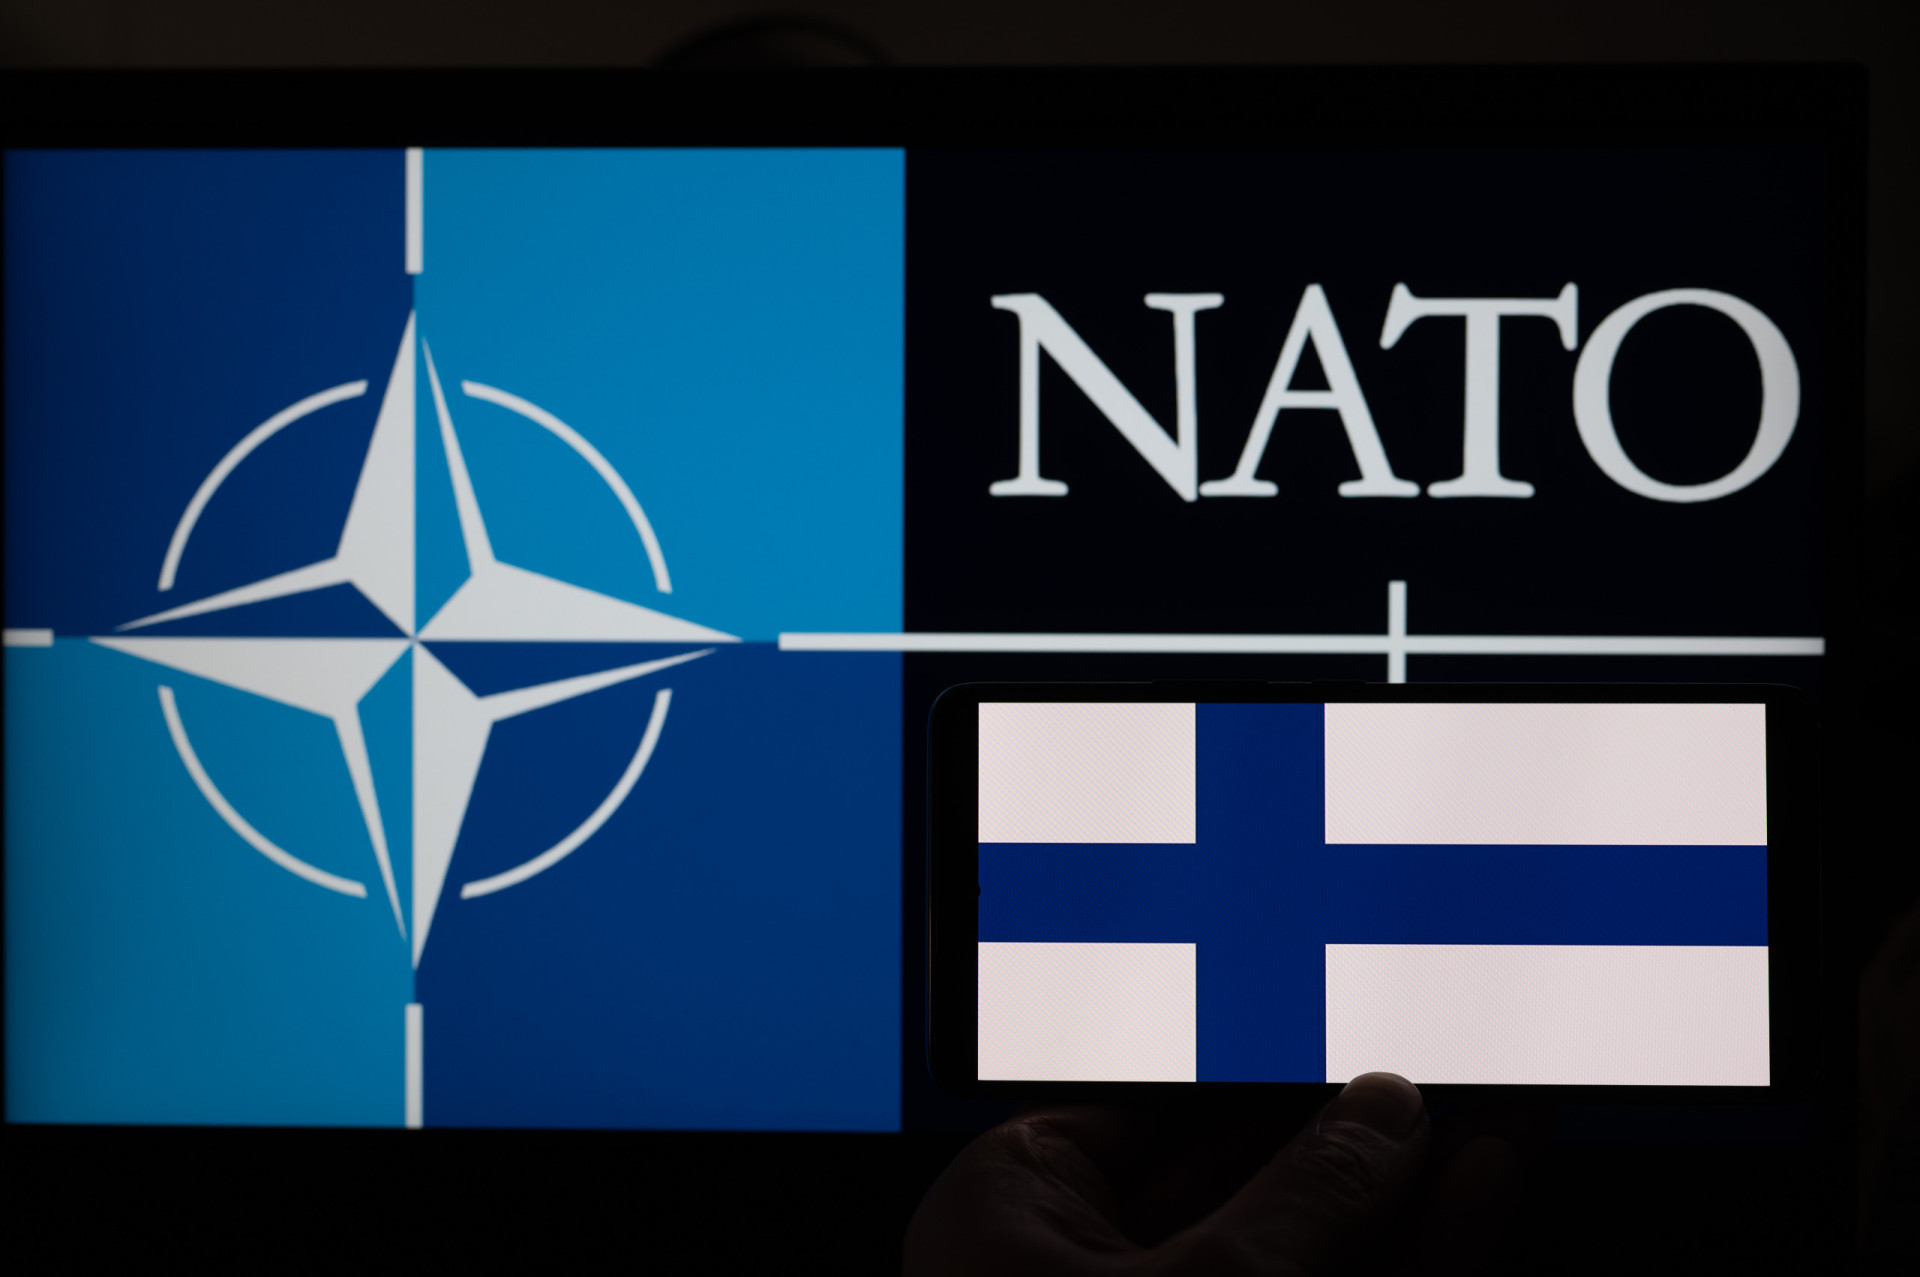 <p>Le 4 avril 2023, la Finlande est devenue officiellement membre de l'OTAN, dans un moment historique également suscité par l'invasion. La nation nordique, qui partage une frontière de 1 340 km avec la Russie, avait demandé à rejoindre l'alliance militaire en raison de la menace imminente. La Russie a immédiatement réagi à l'annonce de l'élargissement de la plus grande alliance militaire du monde en avertissant qu'elle renforcerait ses forces le long de sa frontière avec la Finlande.</p><p>Sources: (NATO) (The Guardian) (TIME) (Stockholm International Peace Research Institute) (Macrotrends) (The International Institute for Strategic Studies) (Grey Dynamics) (The Conversation) (The Independent International Commission on Kosovo) (Associated Press) (BBC) (CNN)</p><p>Découvrez aussi: <a class="gs-title" href="https://www.starsinsider.com/fr/lifestyle/451359/ce-que-les-nations-unies-ont-accompli-en-plus-de-75-ans" rel="noopener">Ce que les Nations unies ont accompli en plus de 75 ans</a></p>